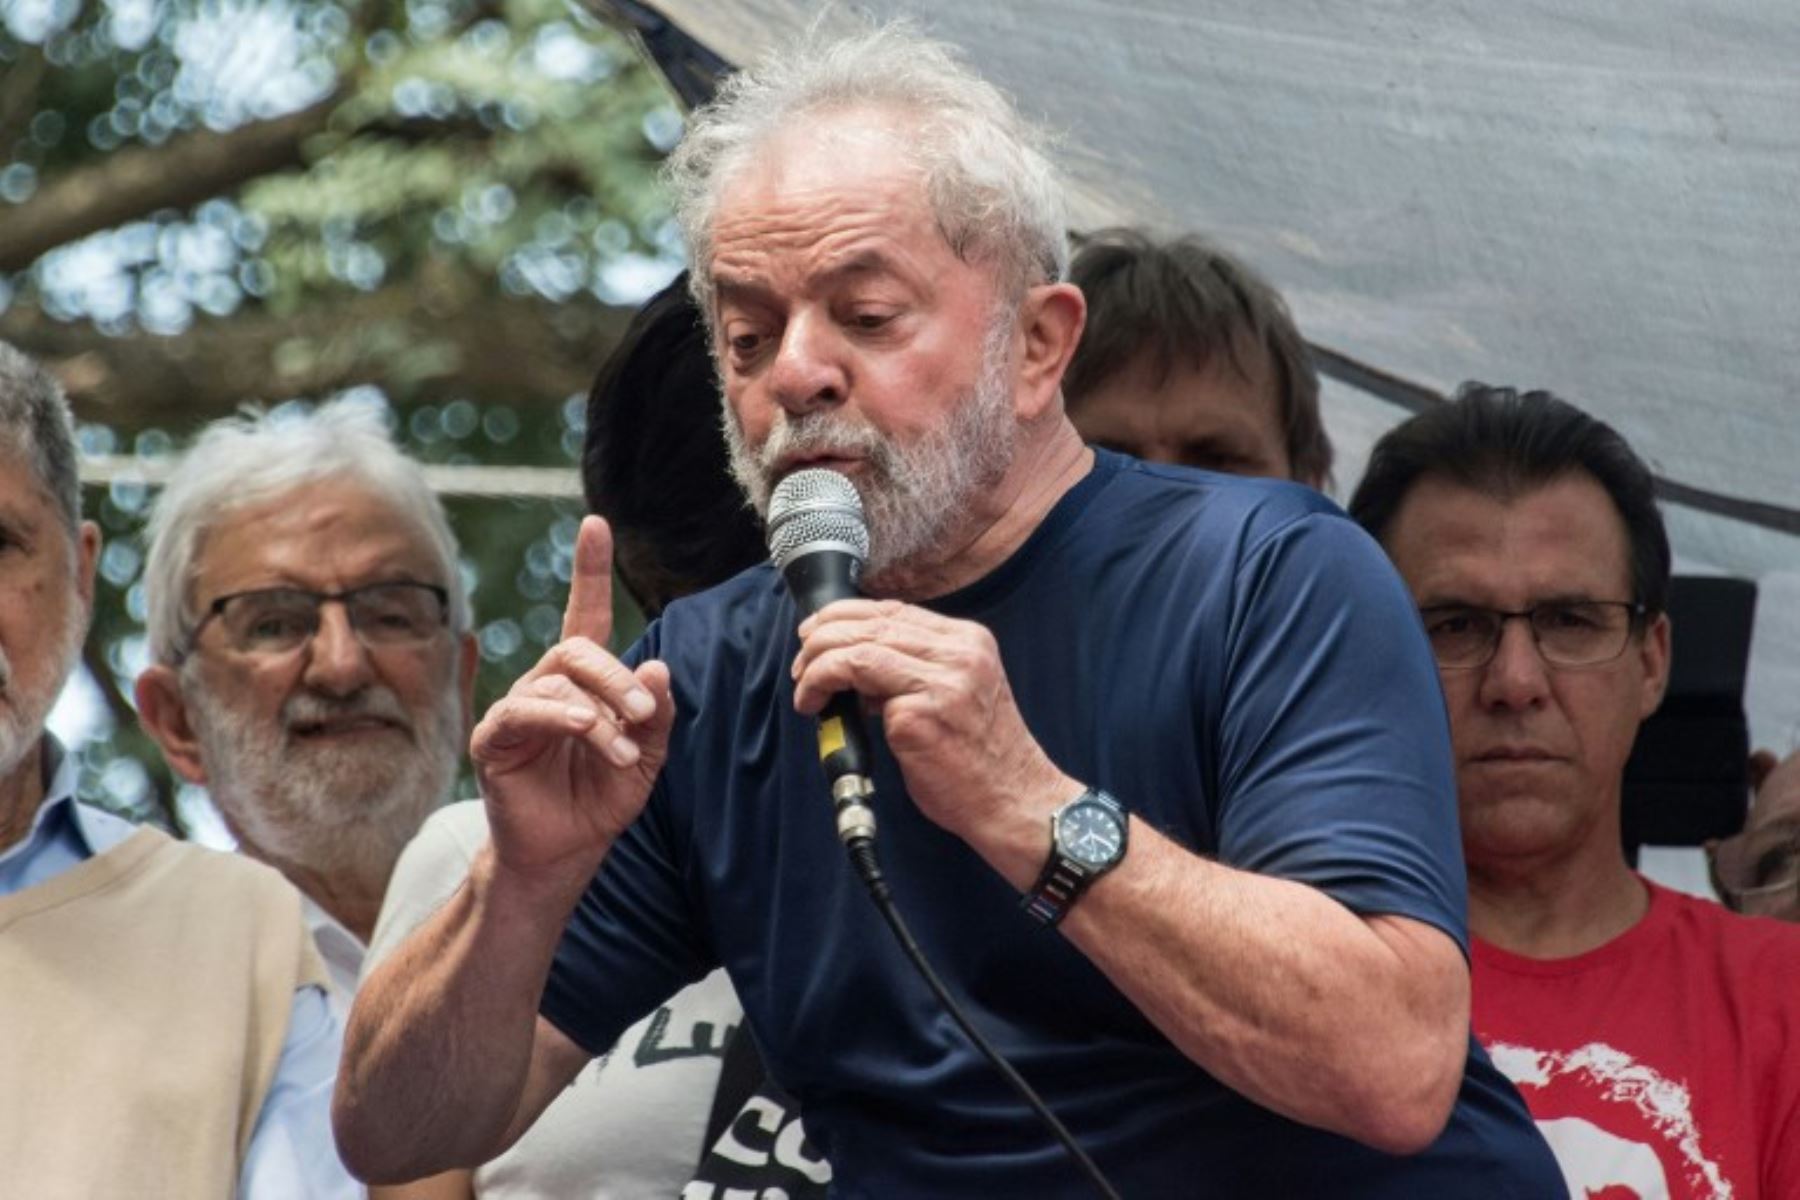 El ex presidente brasileño Luiz Inácio Lula da Silva, icono de la izquierda dijo que cumplirá con la Orden de arresto para comenzar una sentencia de 12 años por corrupción. "Cumpliré con su orden", dijo a una multitud de seguidores.Foto:AFP